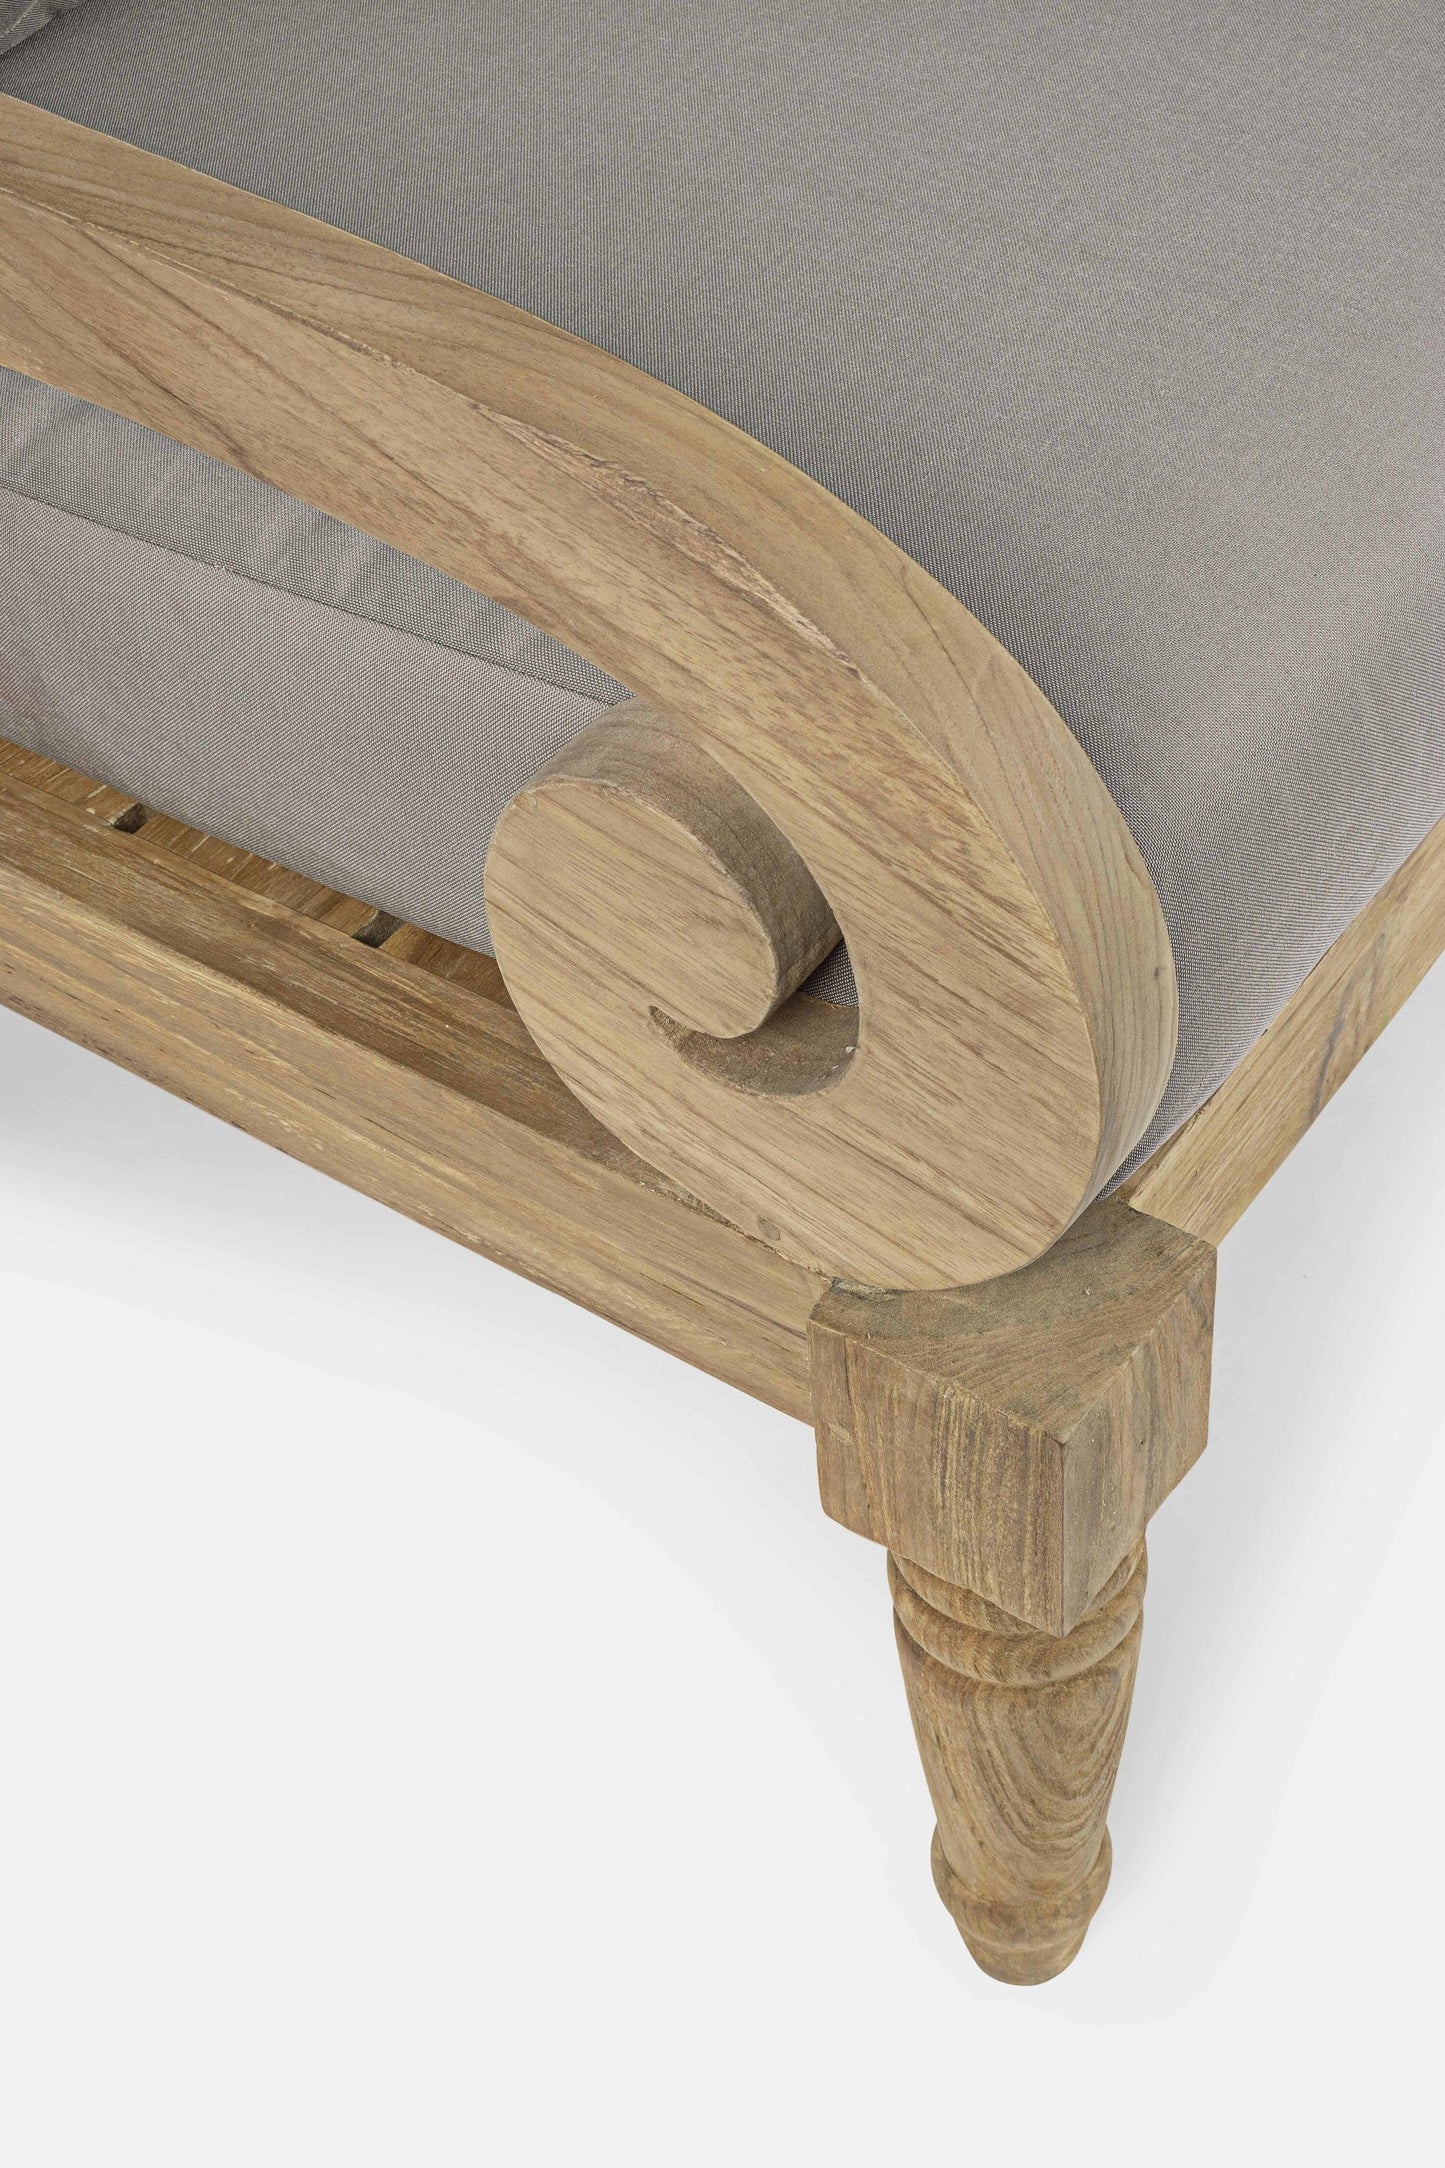 Poltrona in legno teak naturale finitura rustica con cuscini dettaglio braccioli- SPEDIZIONE GRATUITA -lapagoda.net